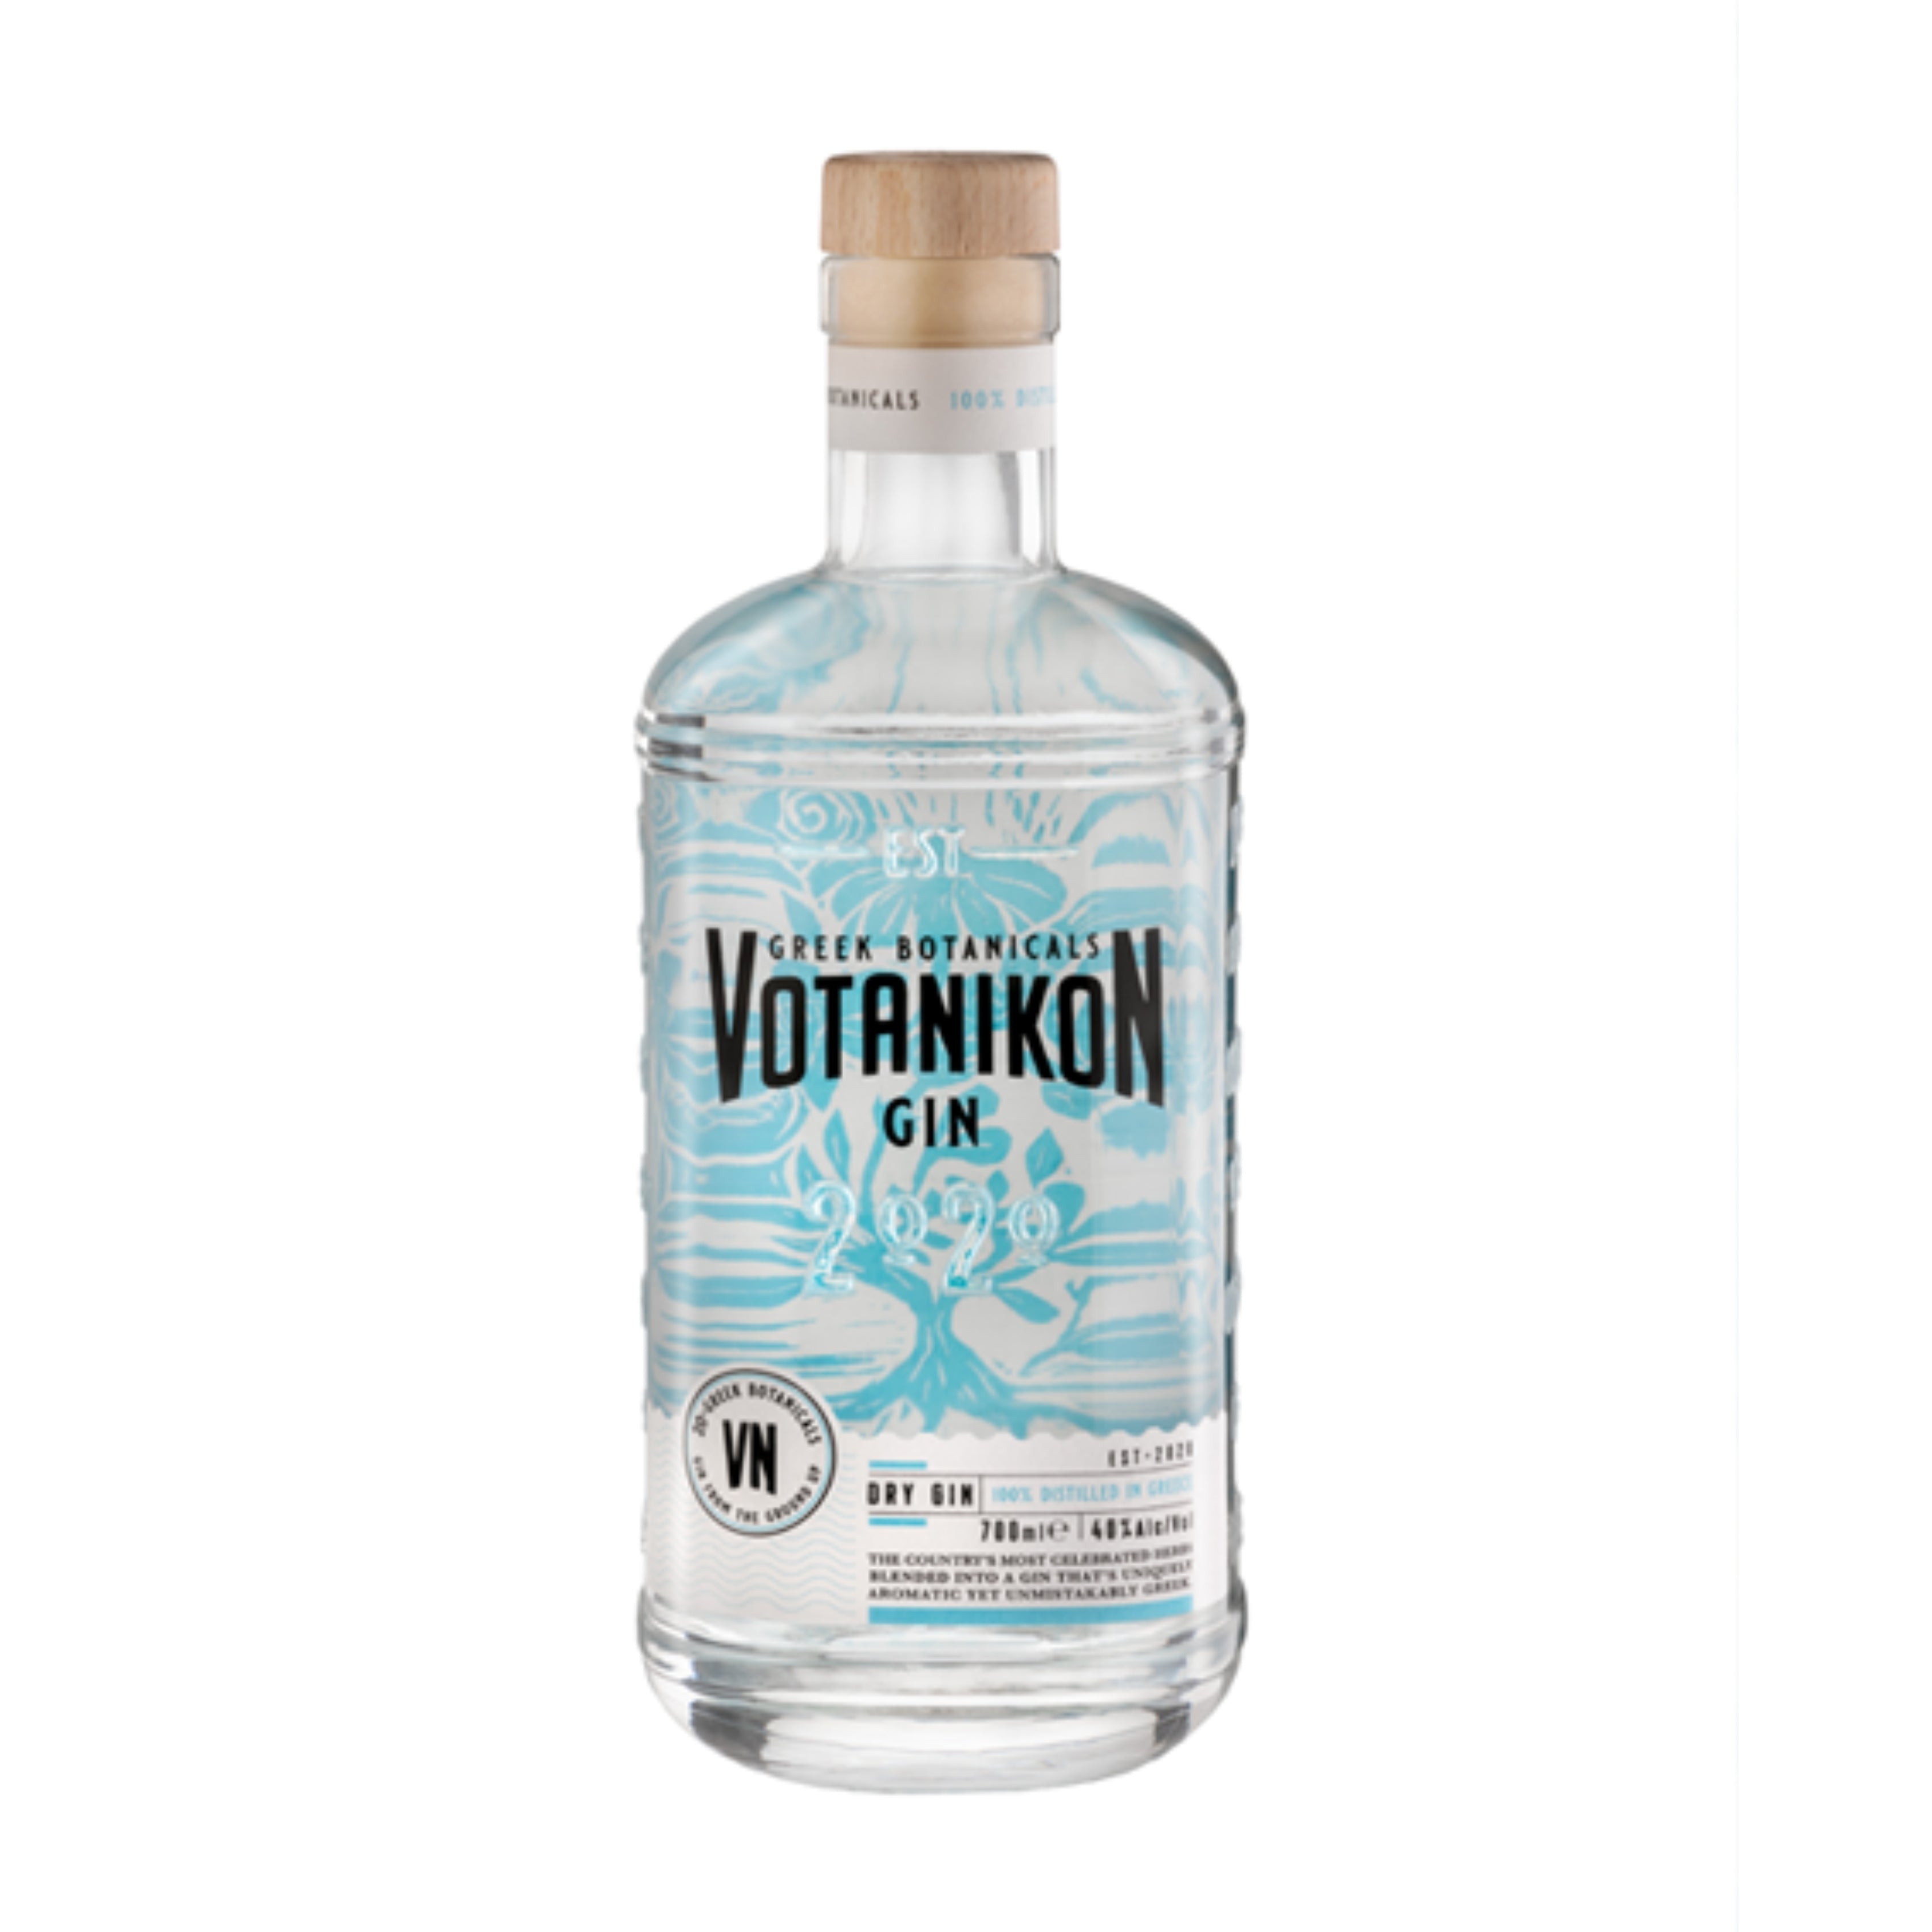 Votanikon-Gin - 700 ml